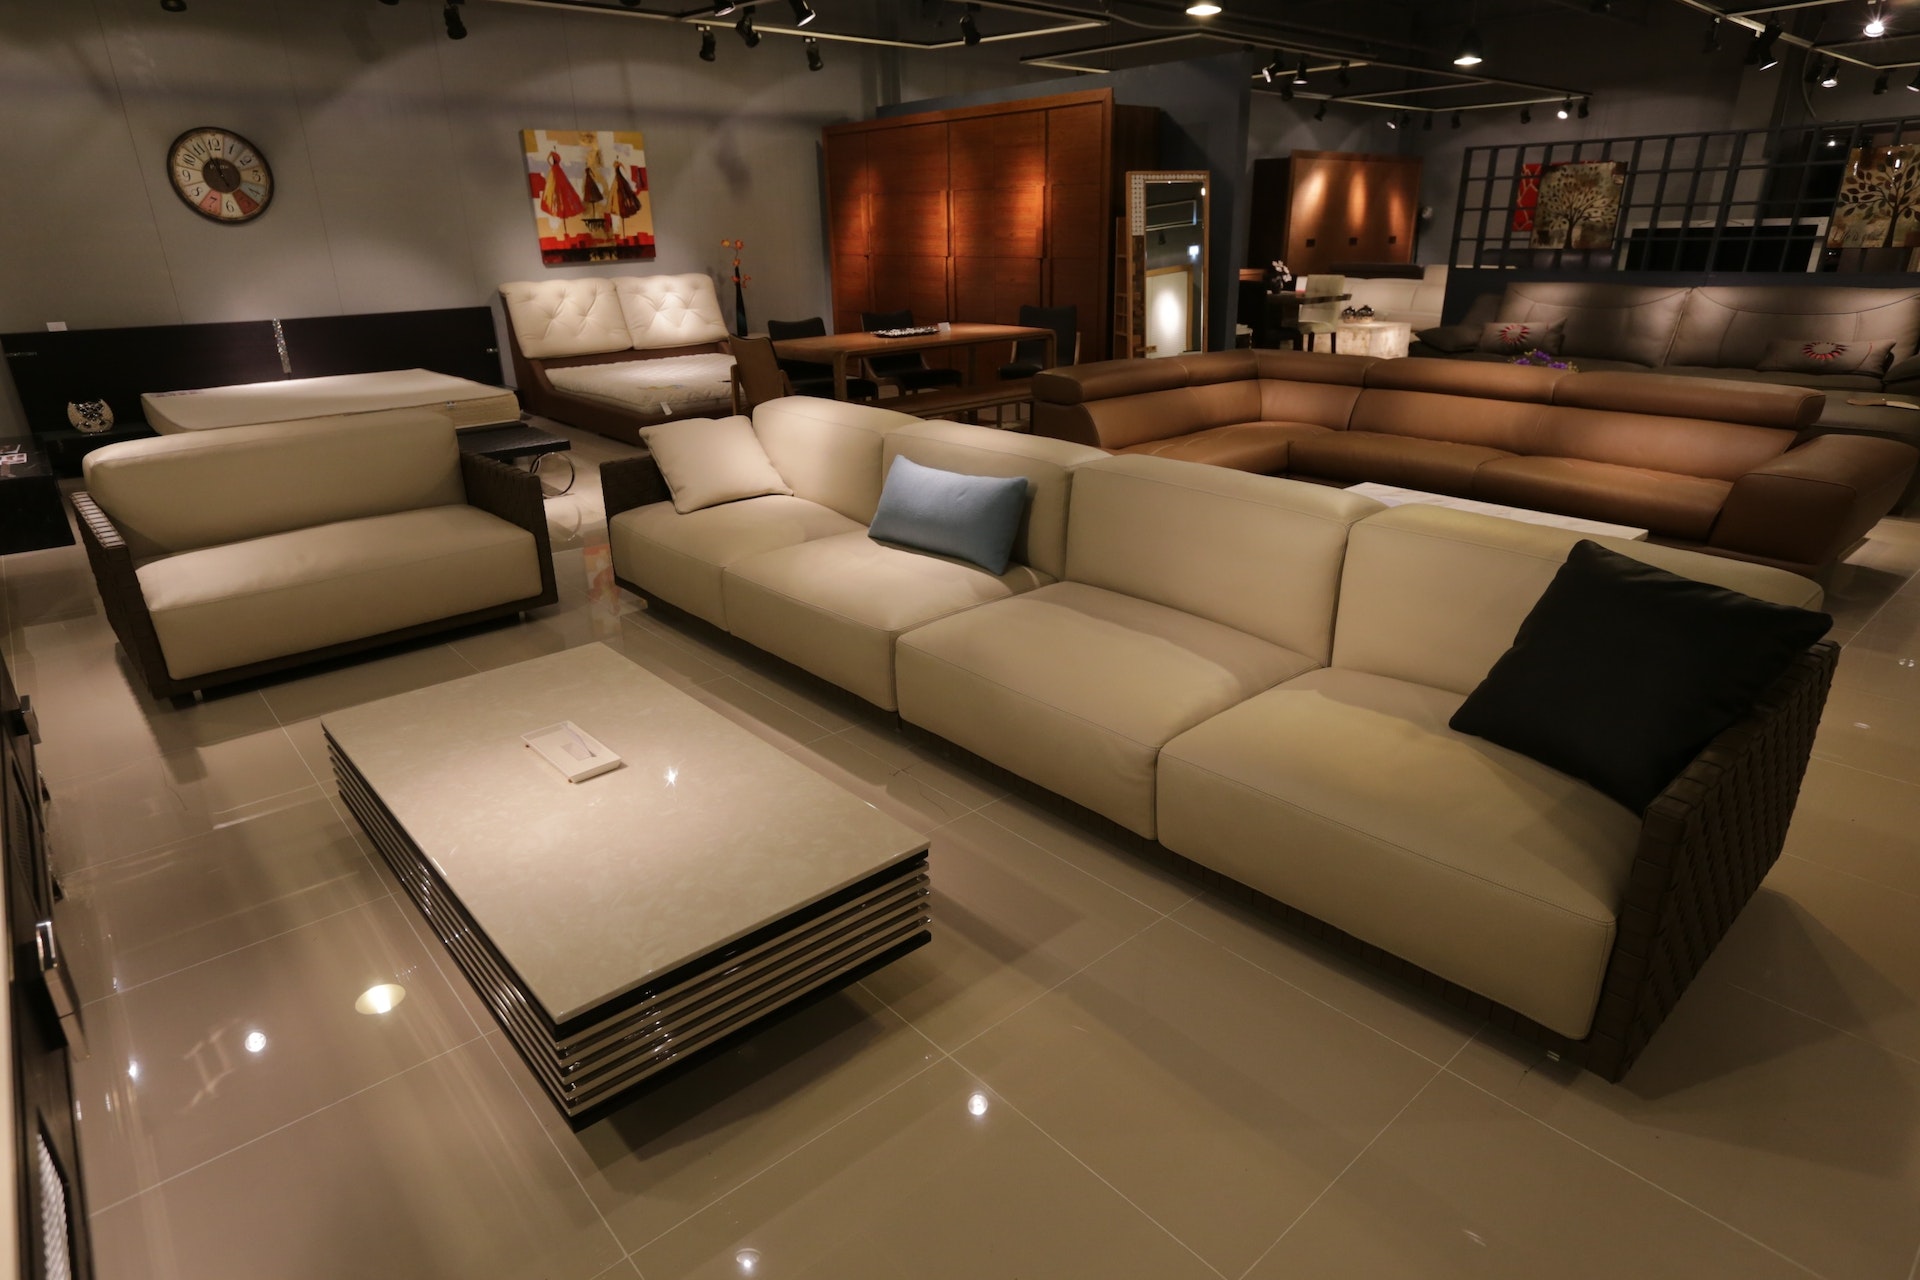 How Furniture Impacts Your Interior Design